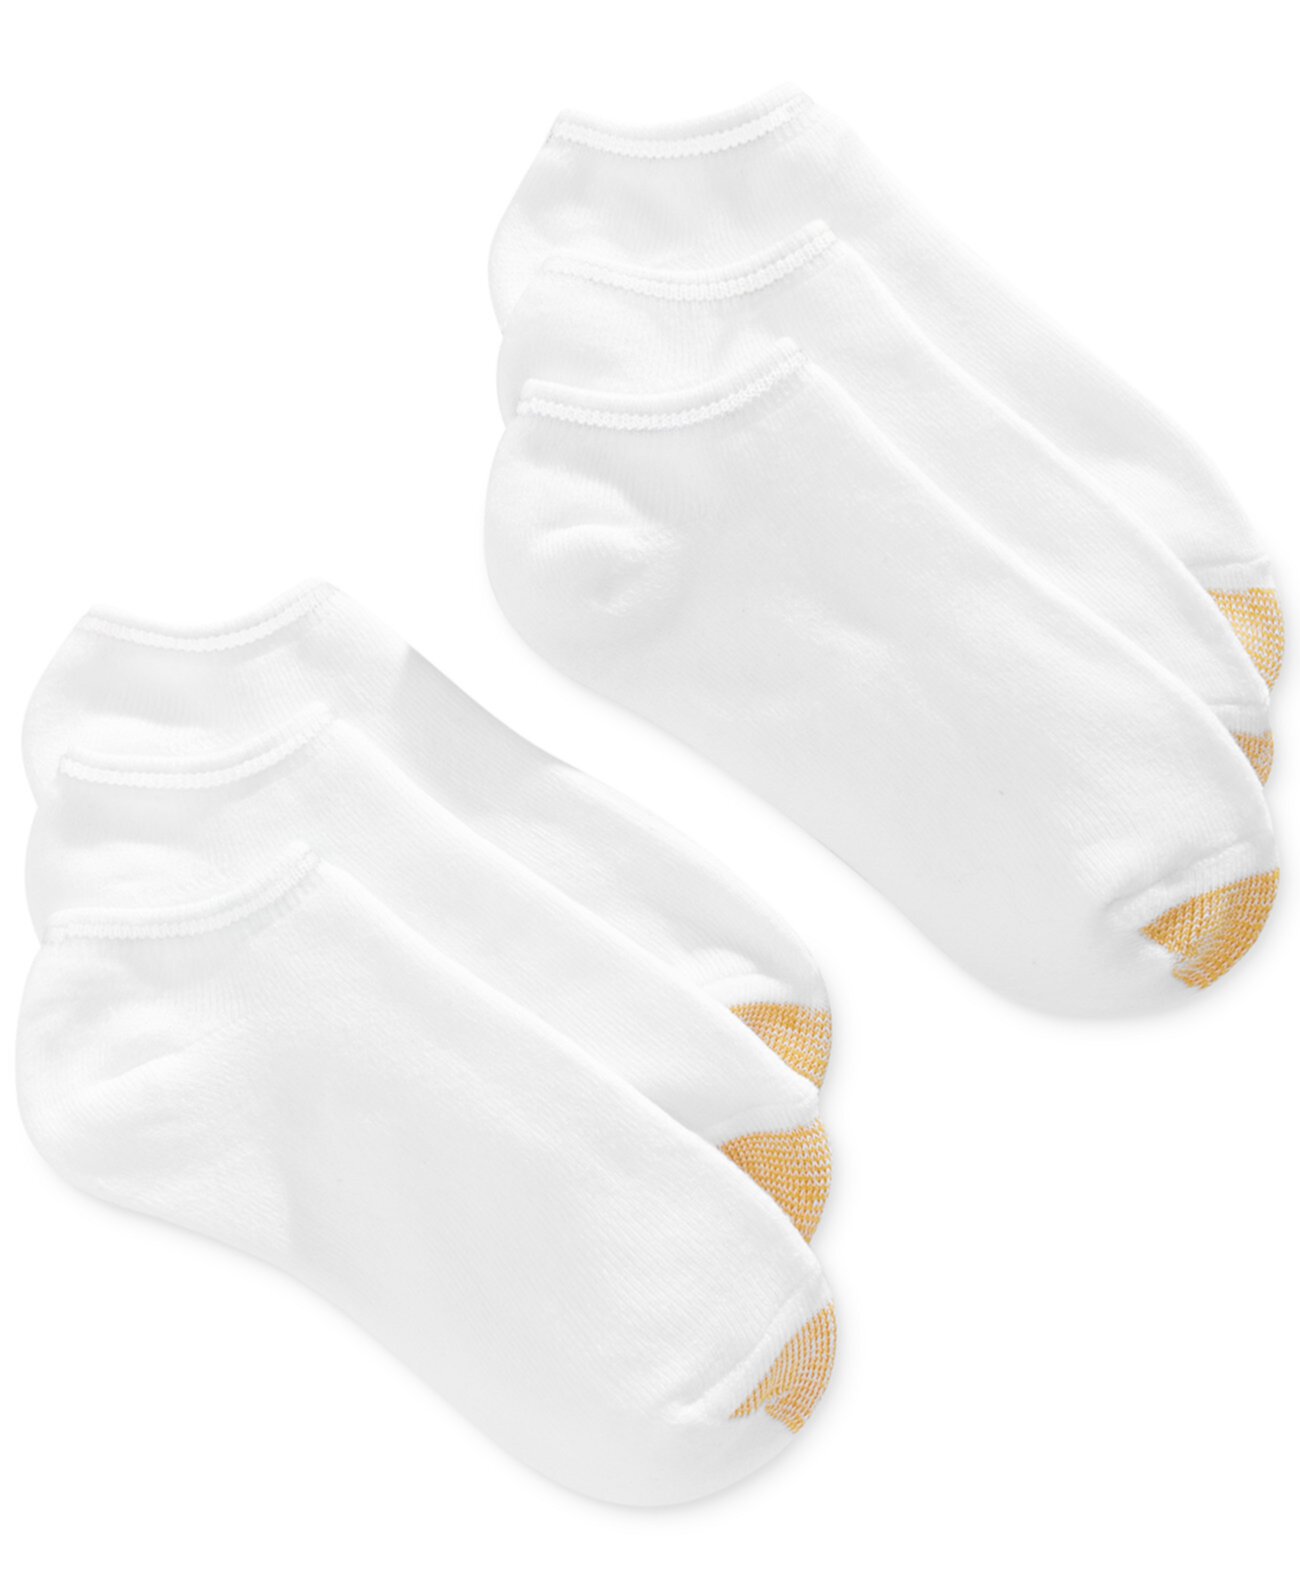 Женские носки Ankle Cushion No Show 6 Pack, также доступны в увеличенных размерах Gold Toe